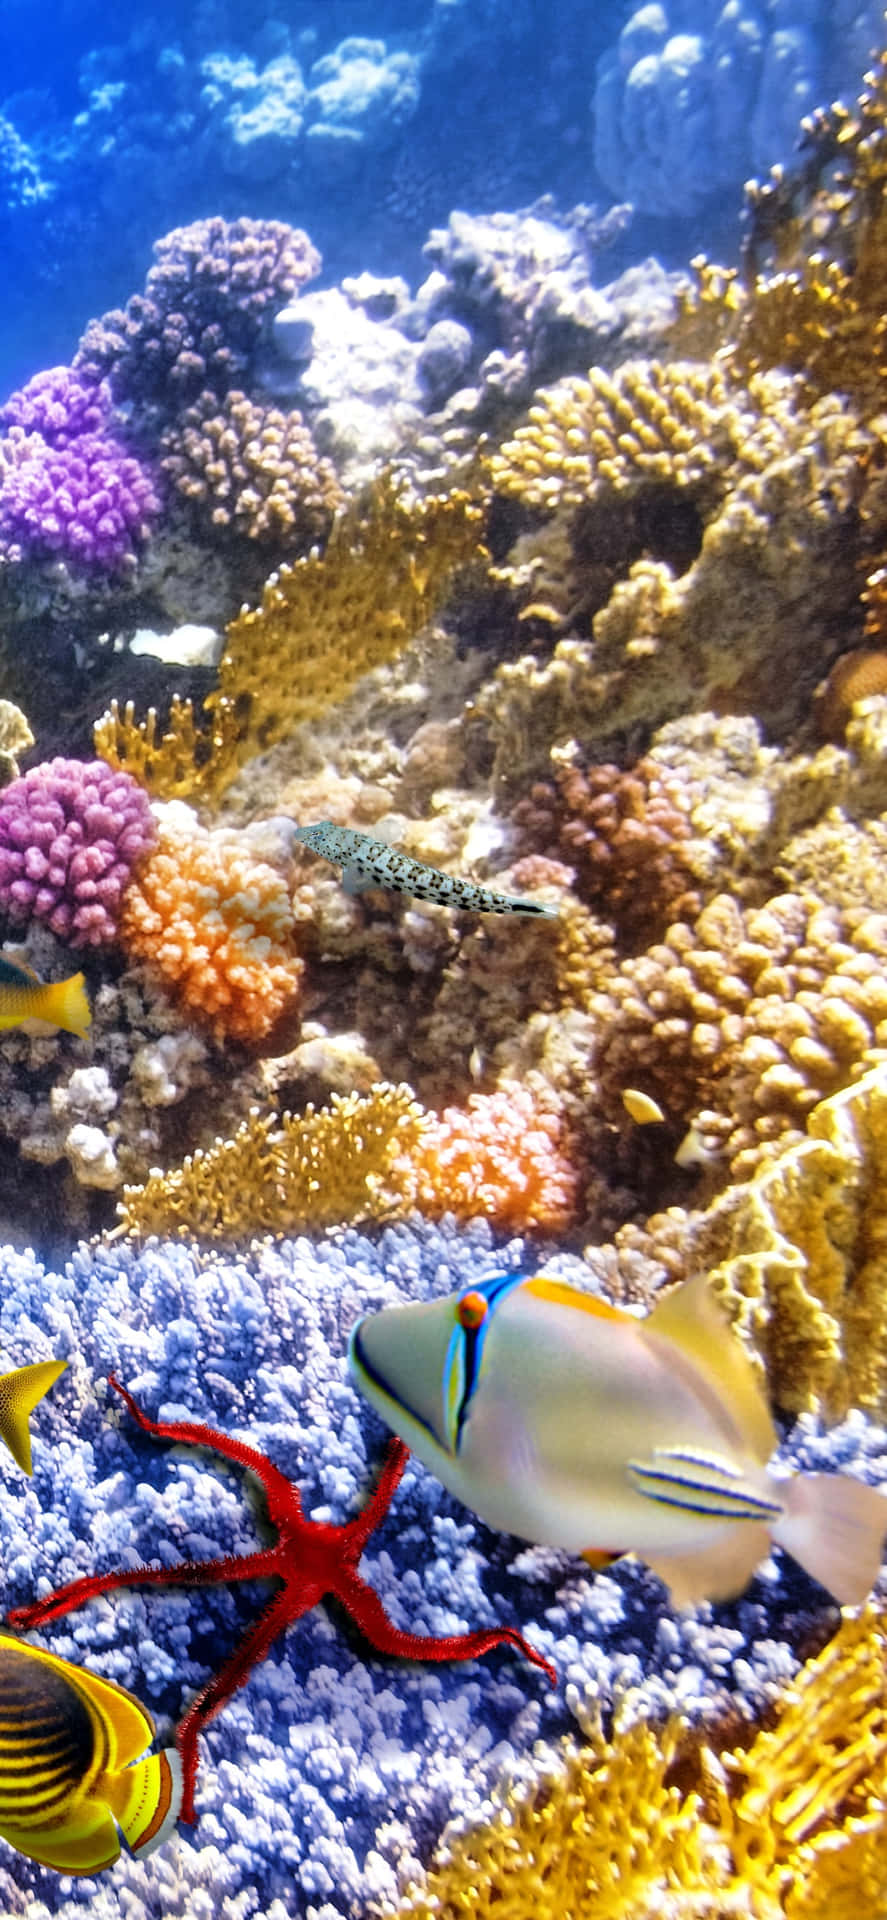 Einbunter Korallenriff Mit Fischen Und Korallen Wallpaper